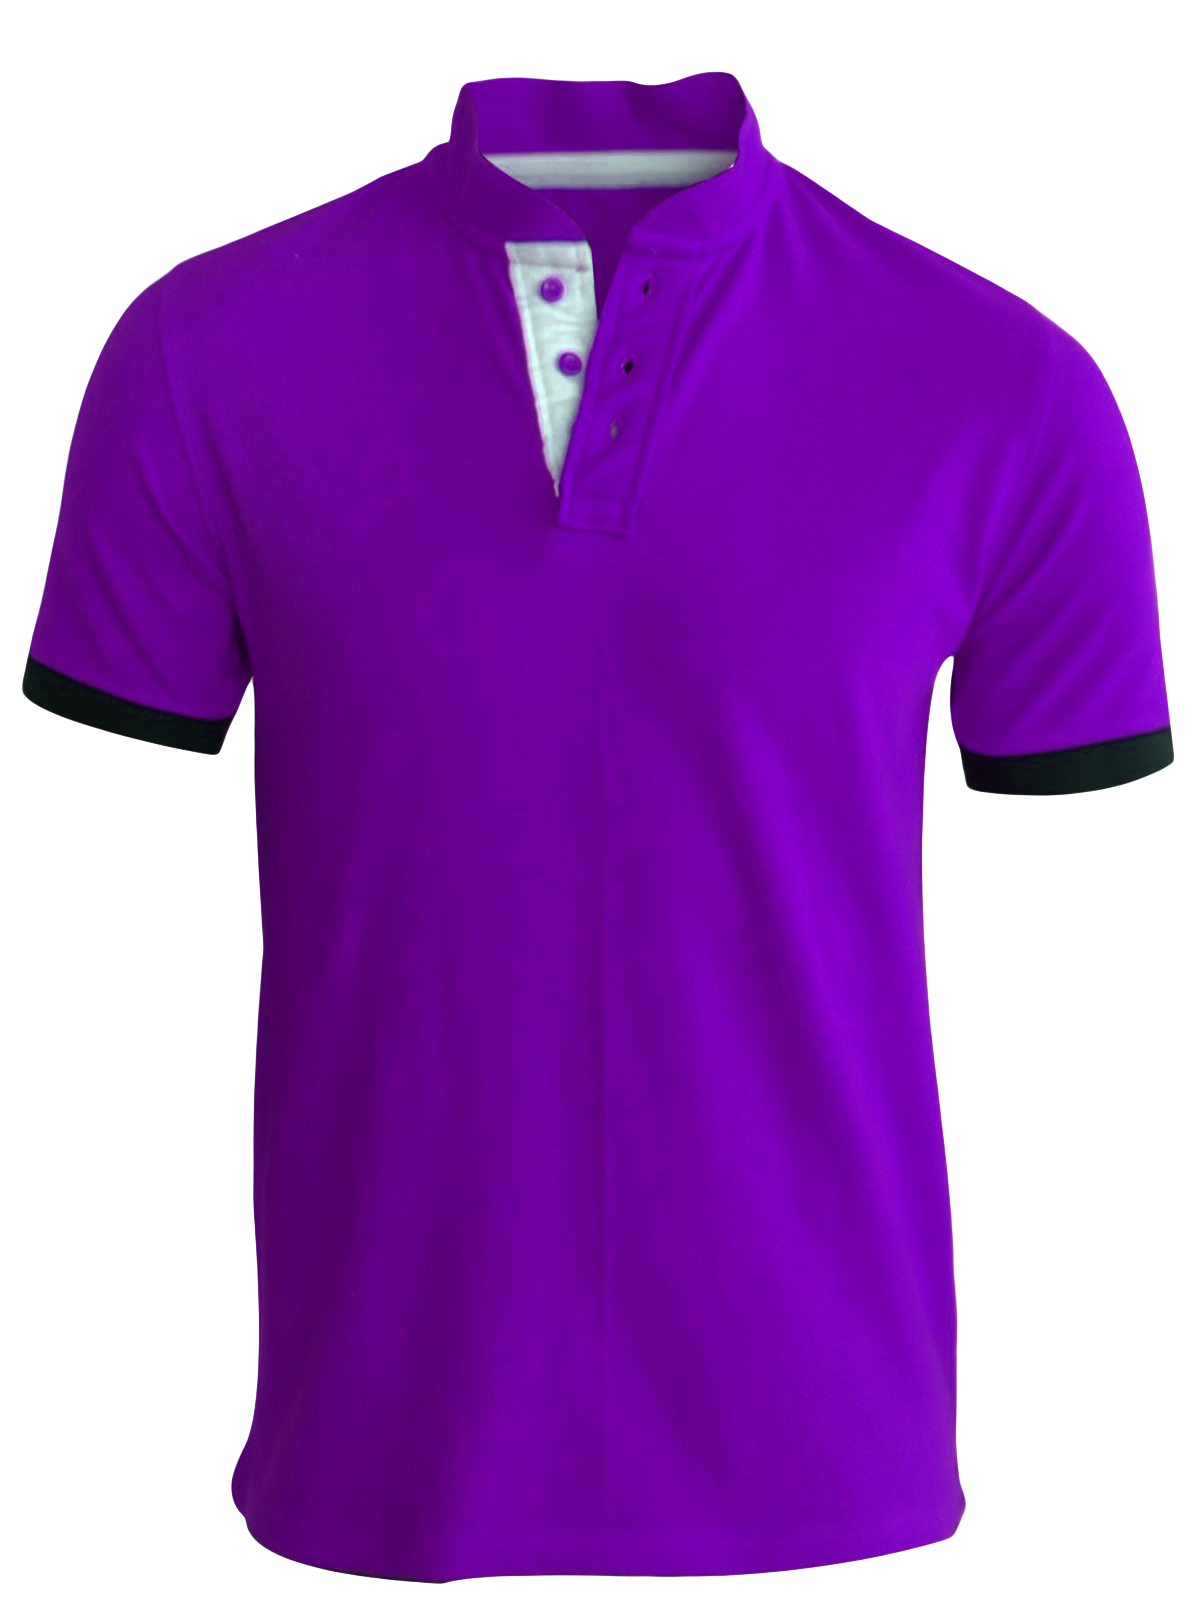 Shirts purple object